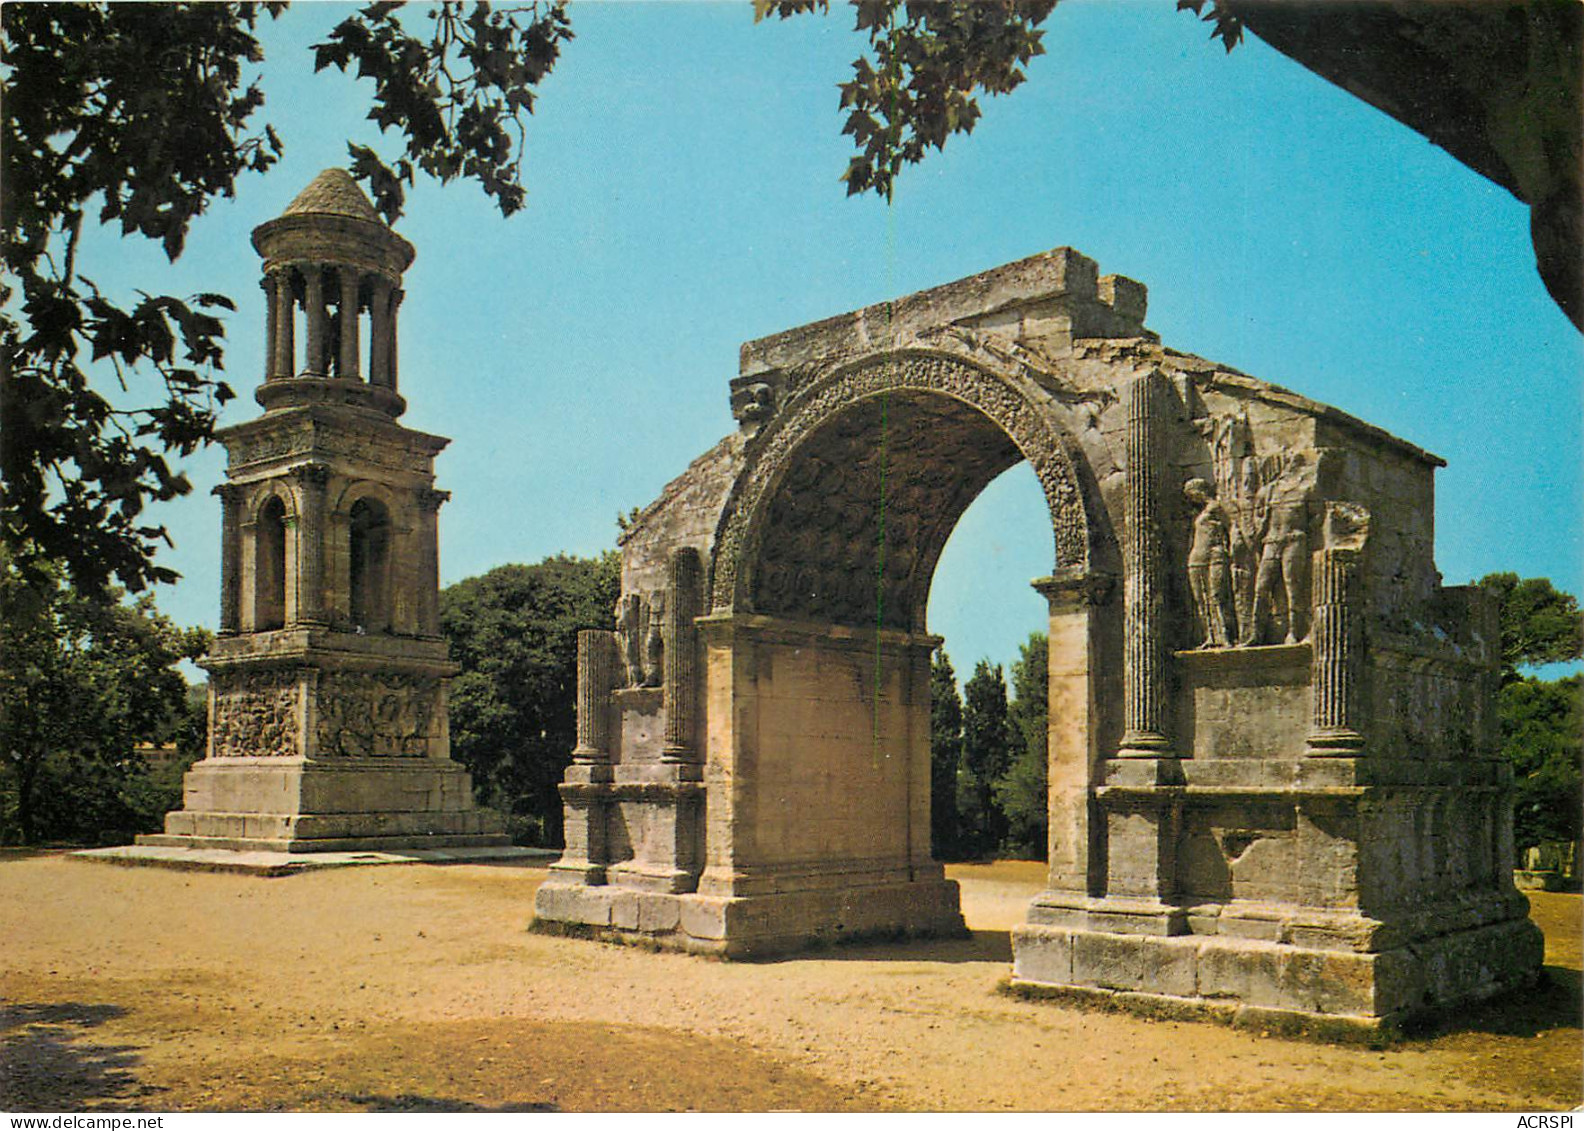 SAINT REMY DE PROVENCE GLANUM Les Antiques Mausolee Des Jules Et Mporte Monumentale 2(scan Recto-verso) MD2598 - Saint-Remy-de-Provence